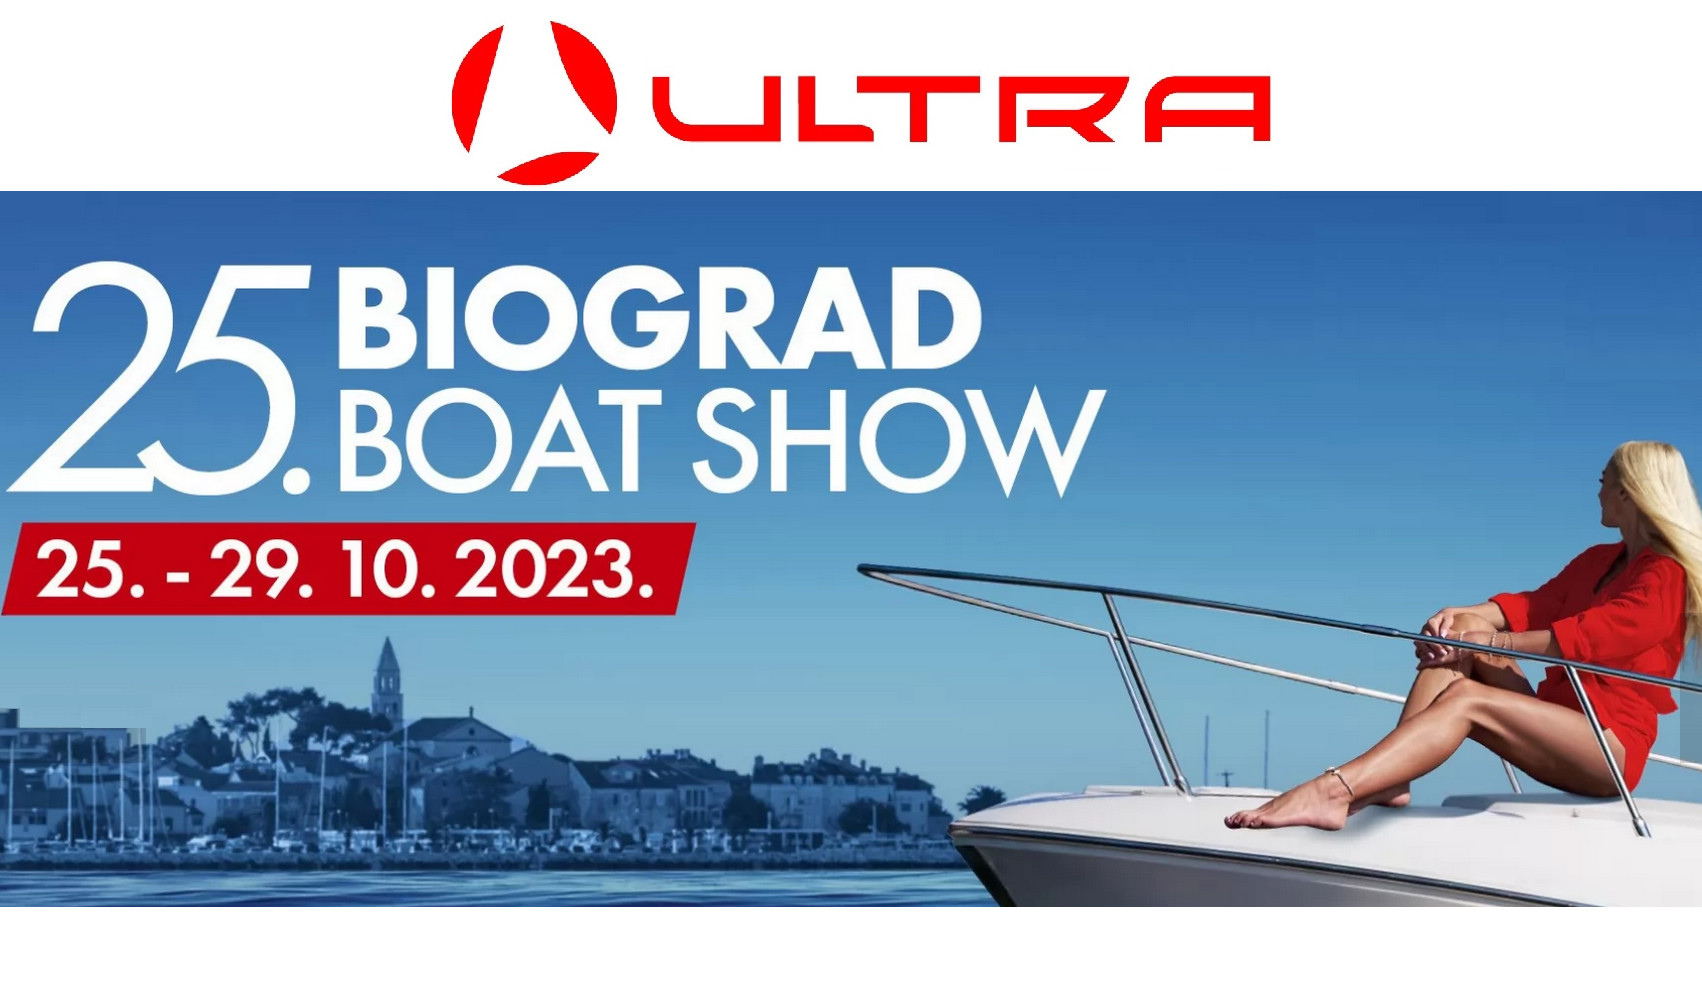 Biograd Boat Show 2023